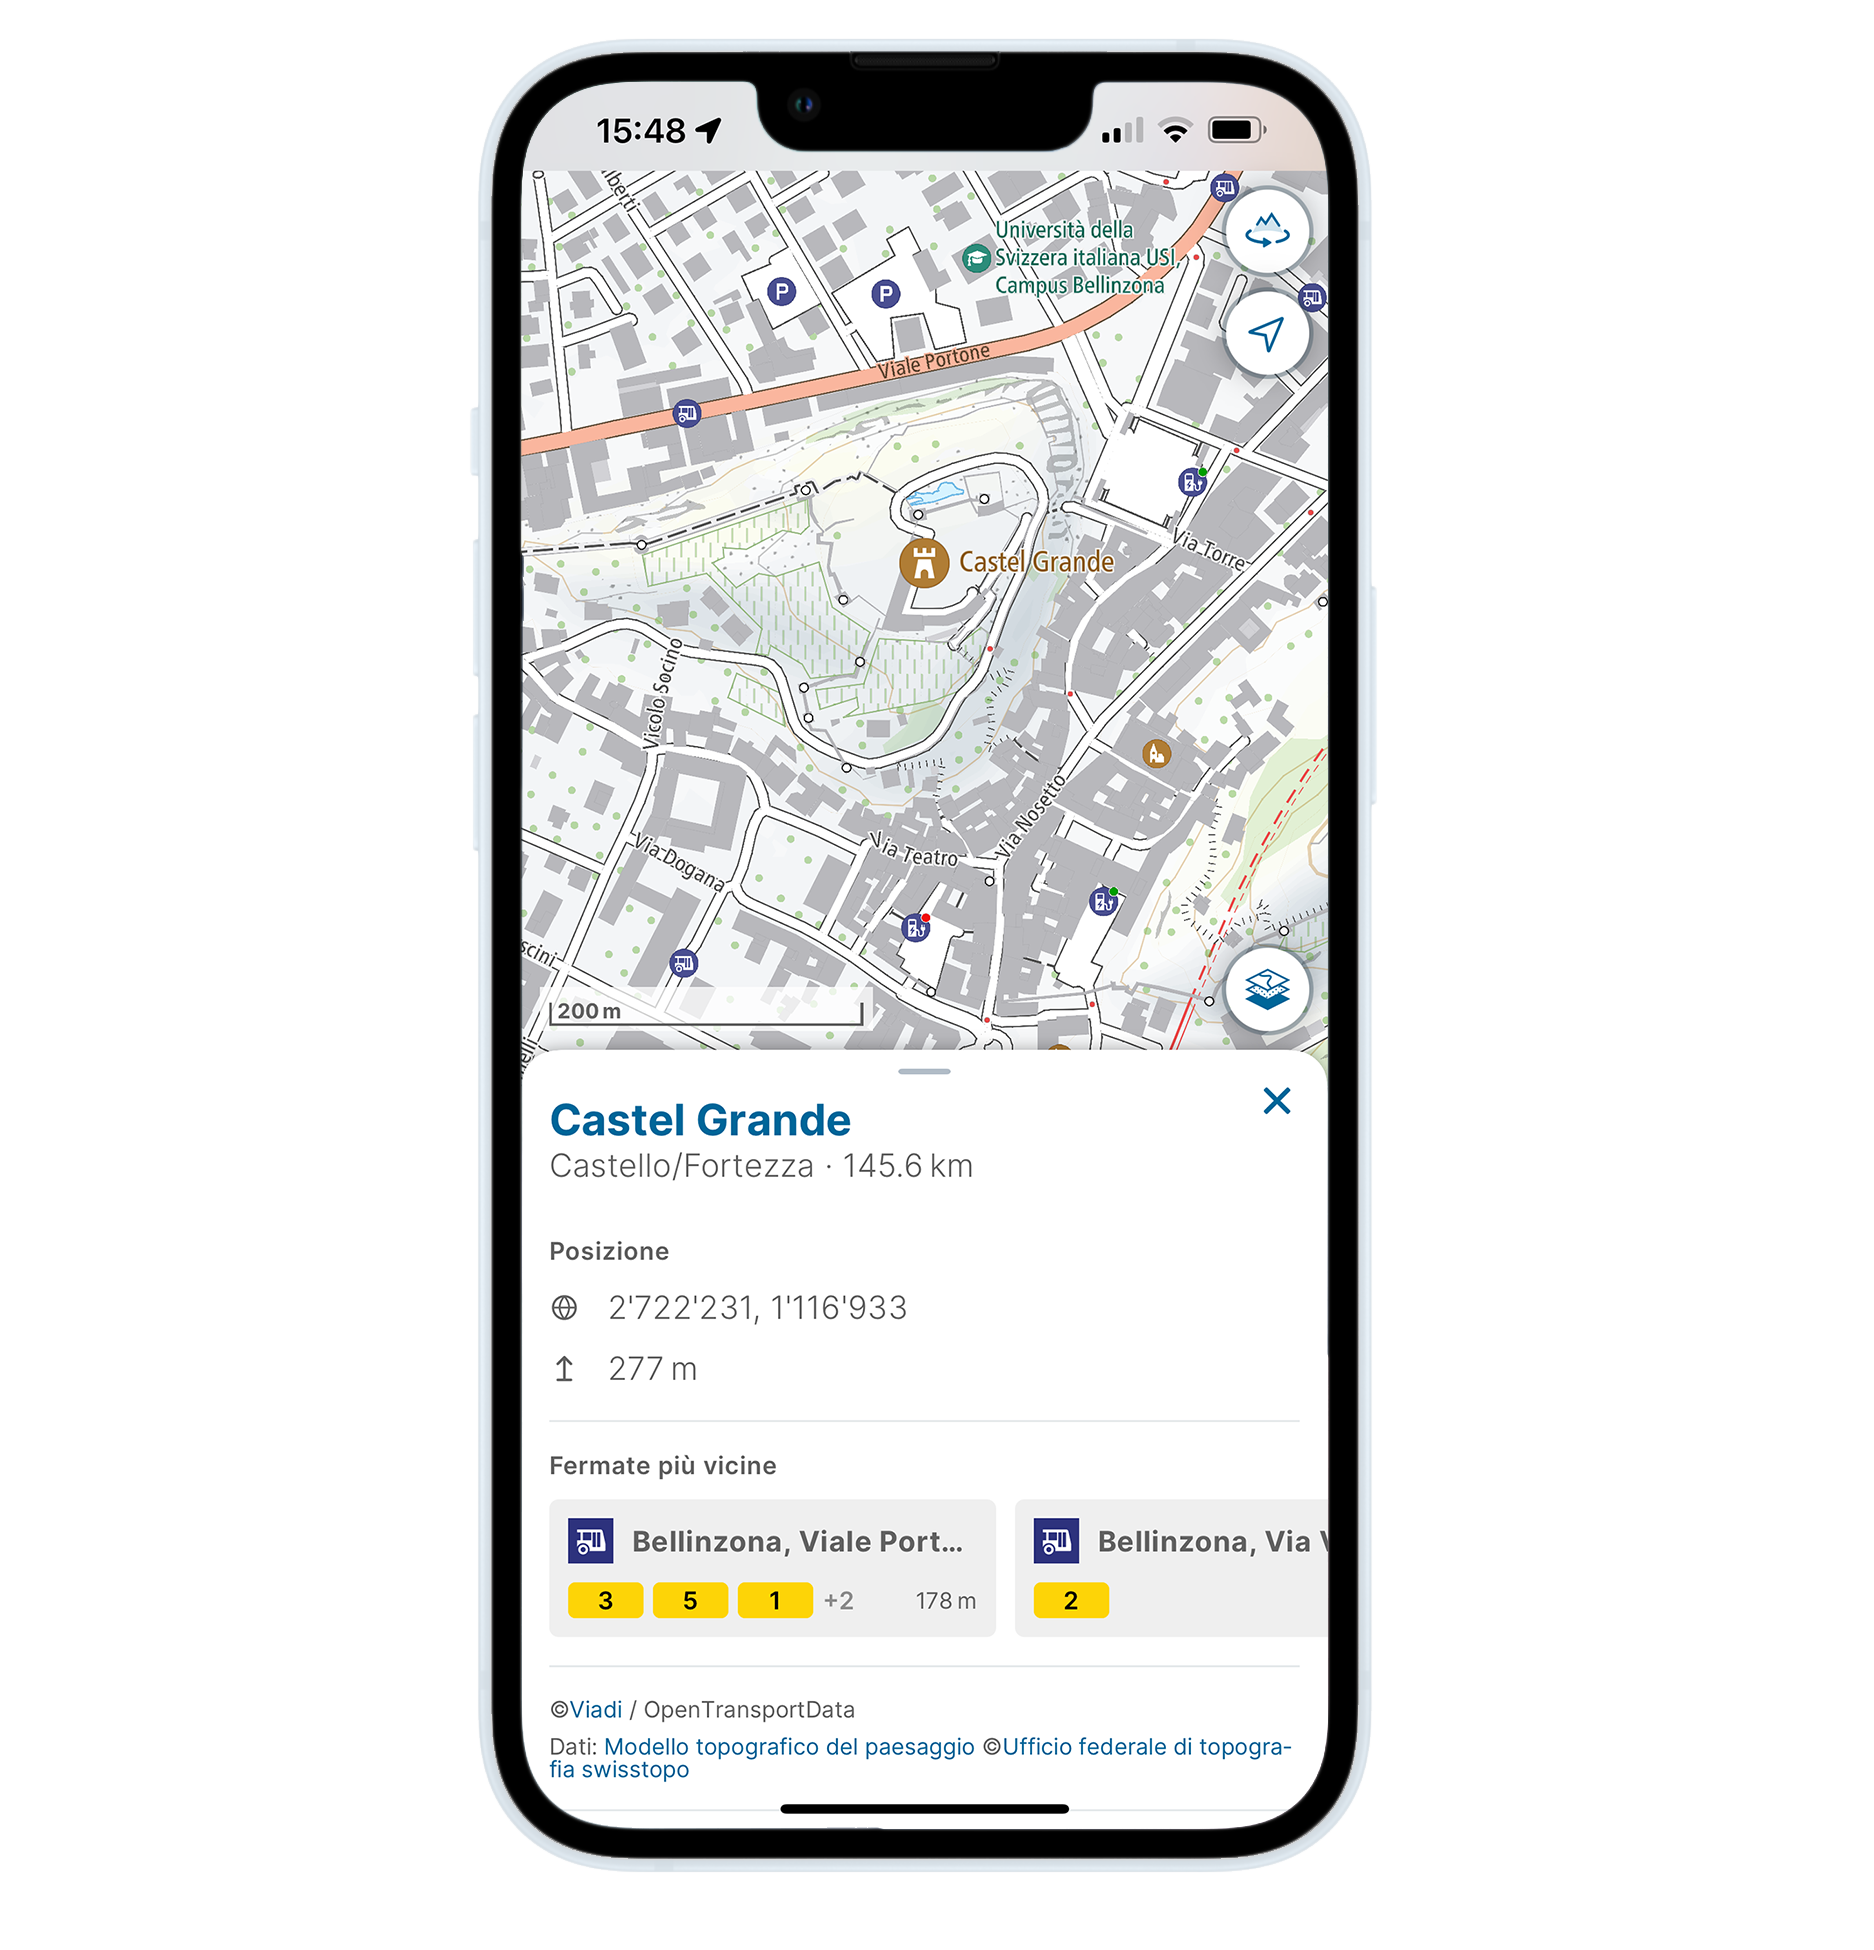 联邦地绘局推出的应用程序将附加信息 (例如距离兴趣地最近的交通工具) 整合到了地图之中。